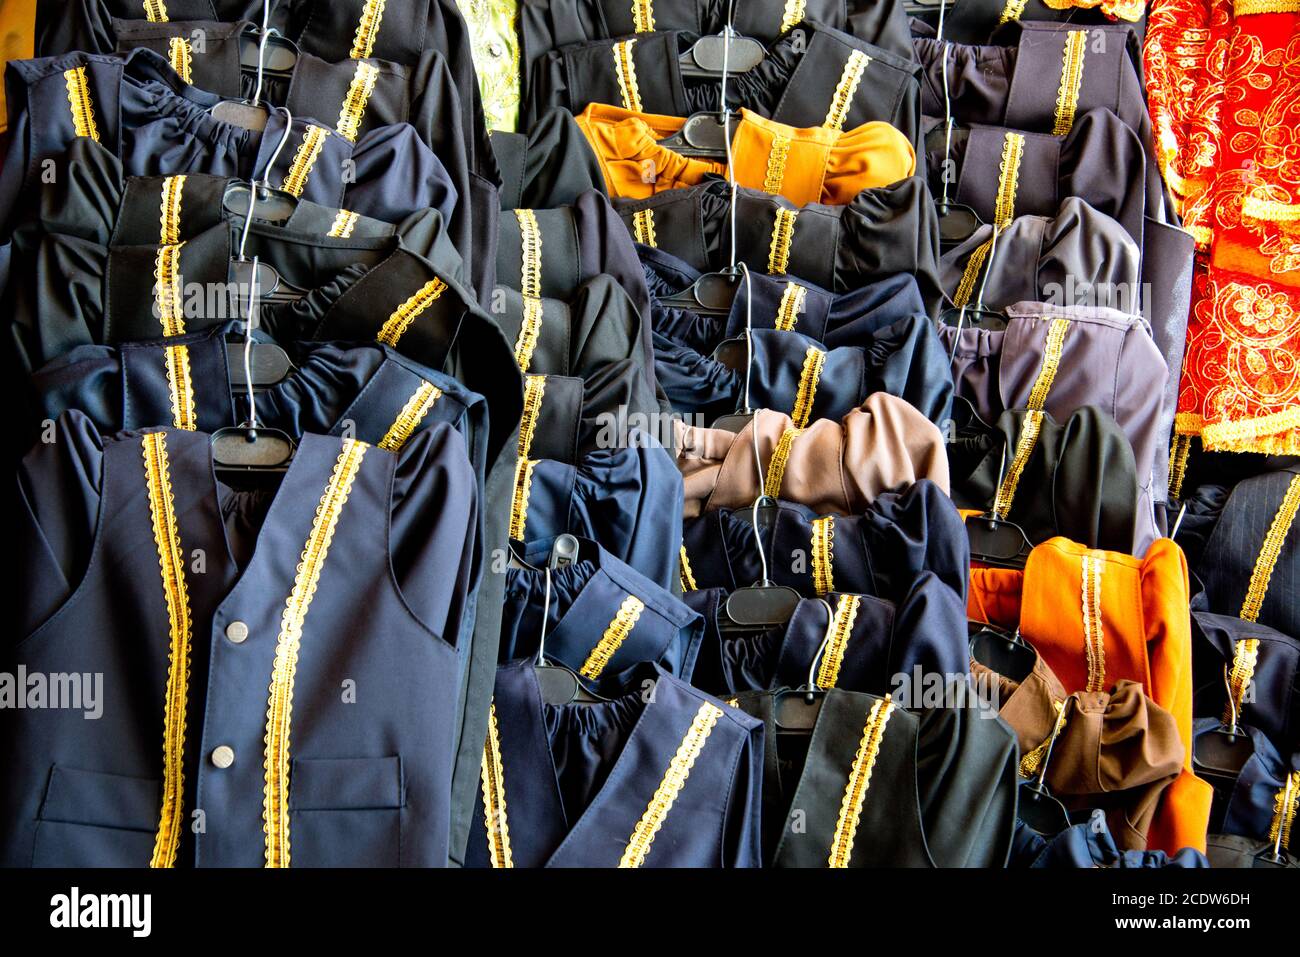 vests at stall in sanliurfa bazar Stock Photo